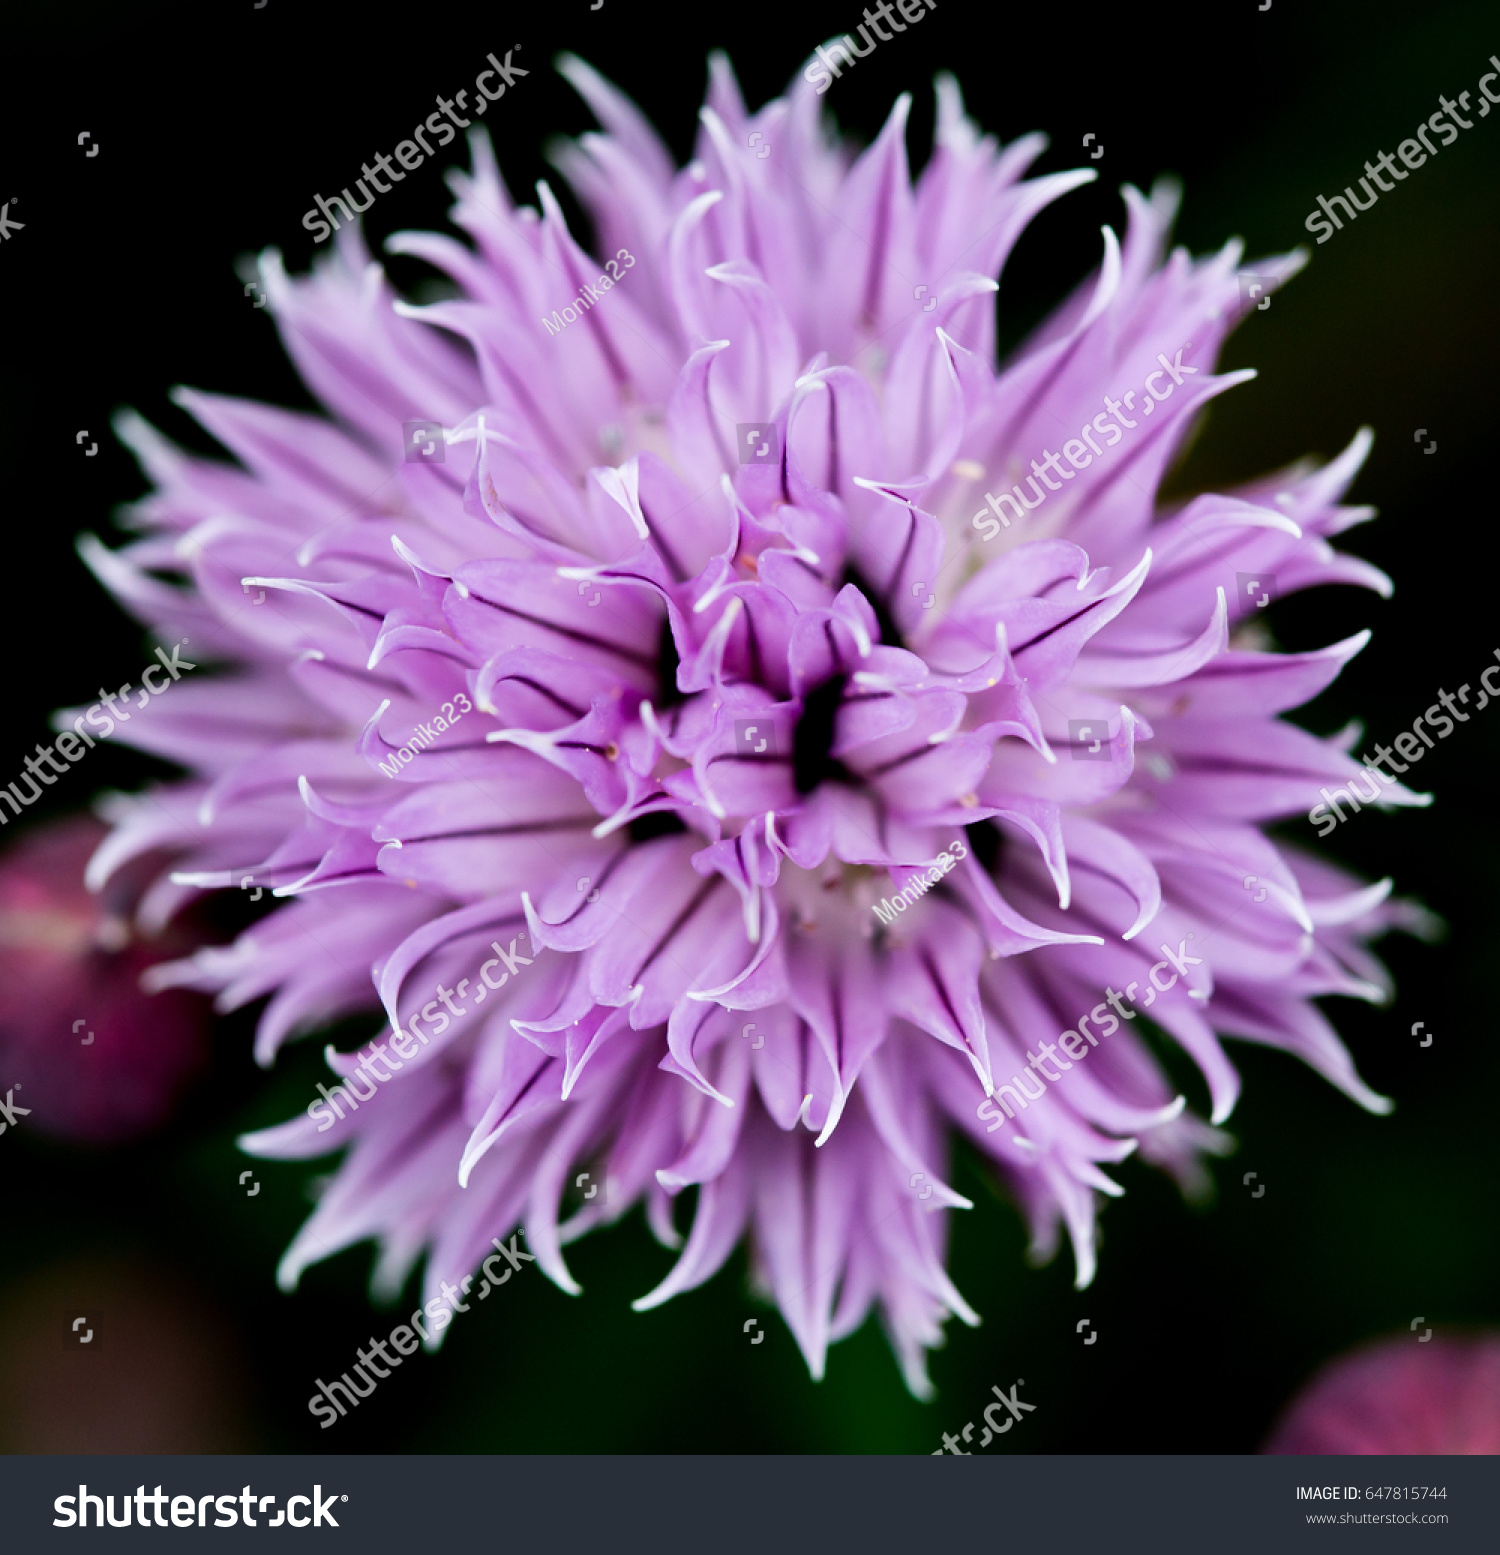 Allium Flower Buds Garden Stock Photo Edit Now 647815744